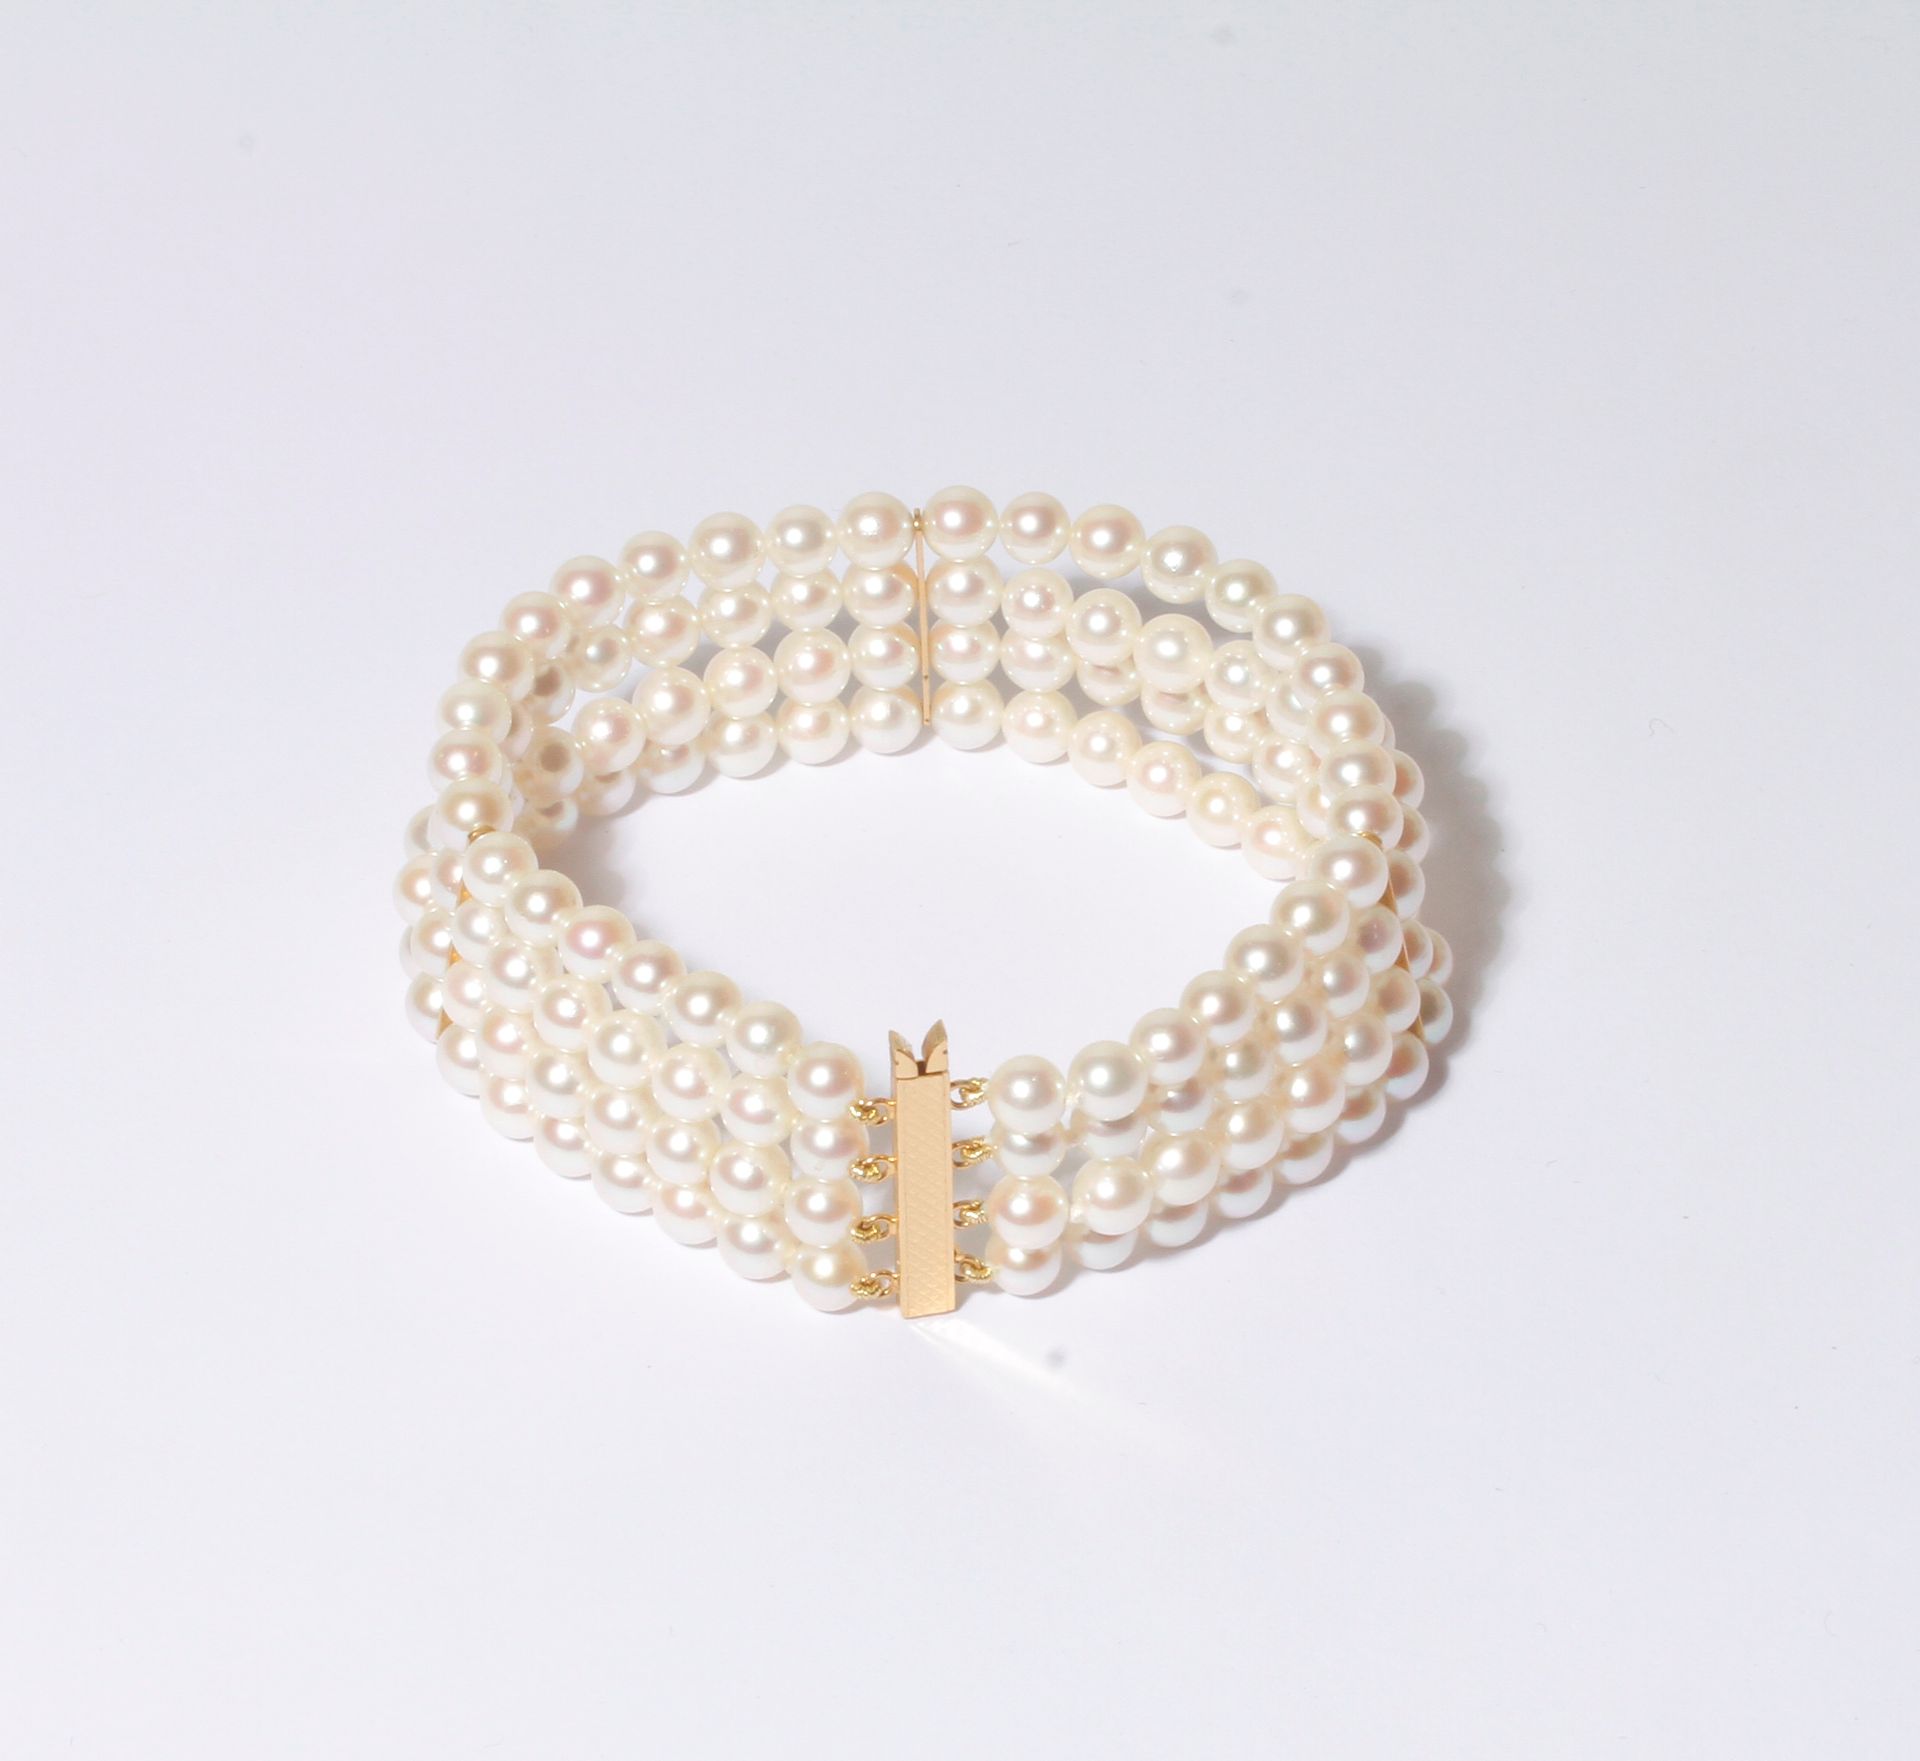 Null 手链有4排养殖珍珠，有18K（750）金条，18K金搭扣。长度：18厘米左右。

毛重 : 31,4 g